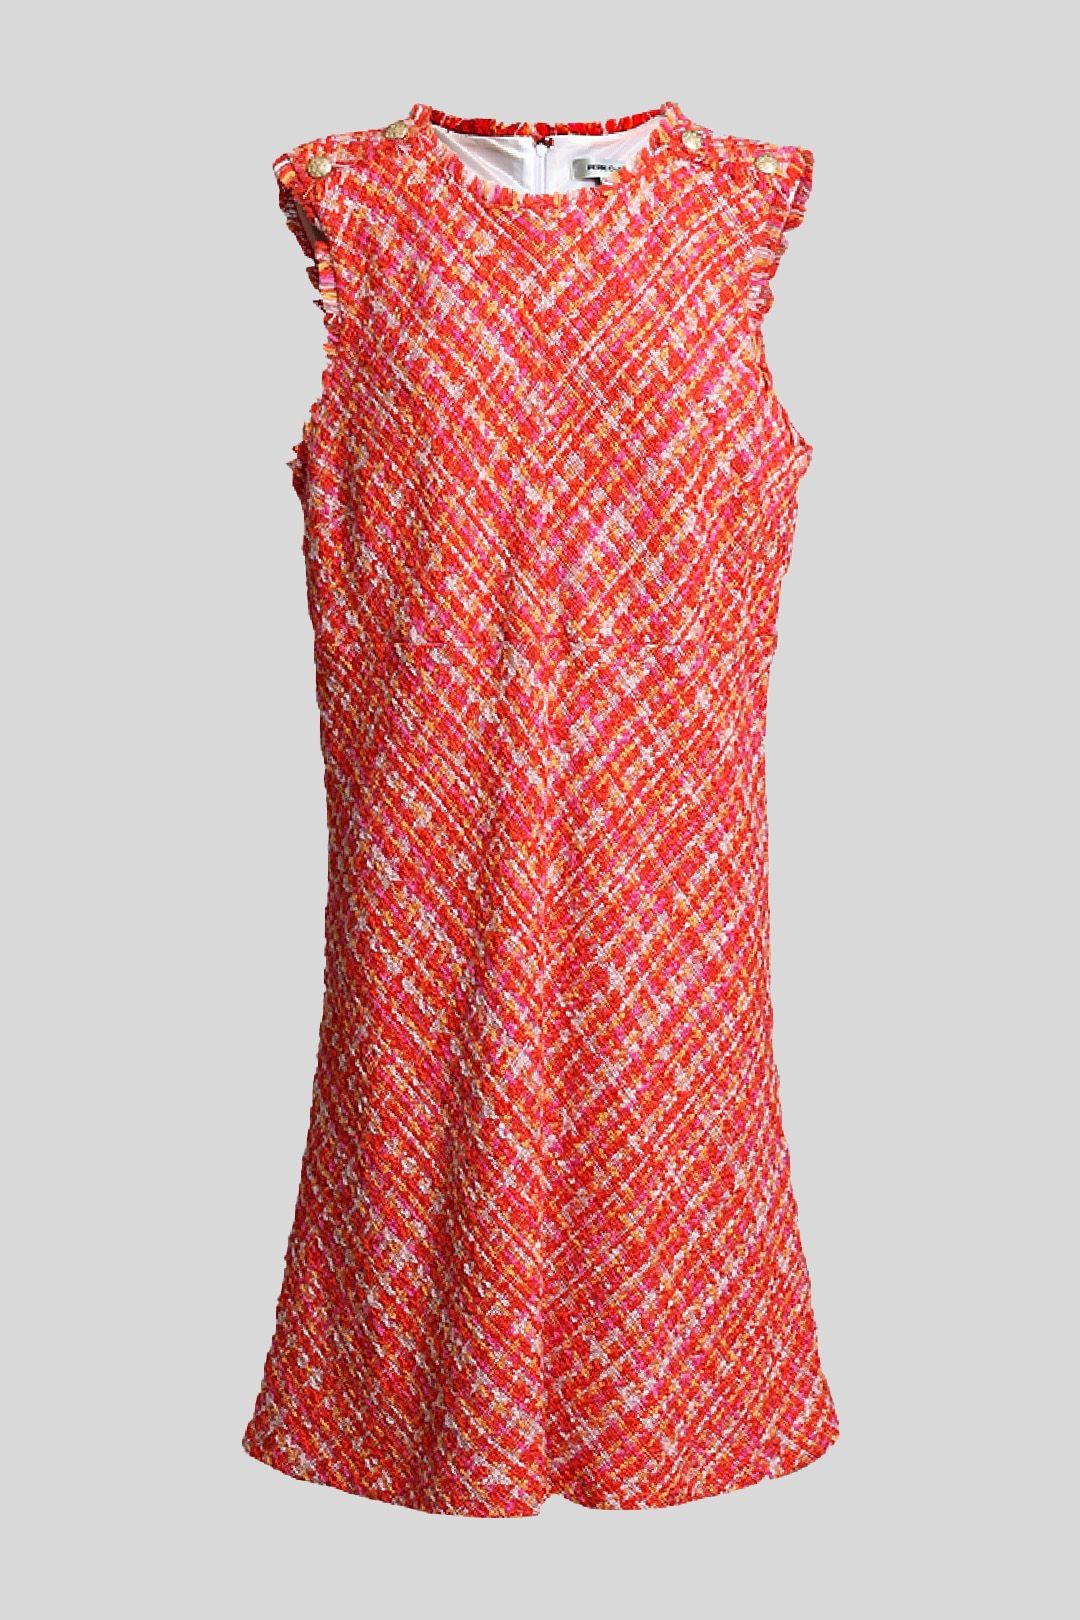 Perri Cutten - Tweed Mini Shift Dress